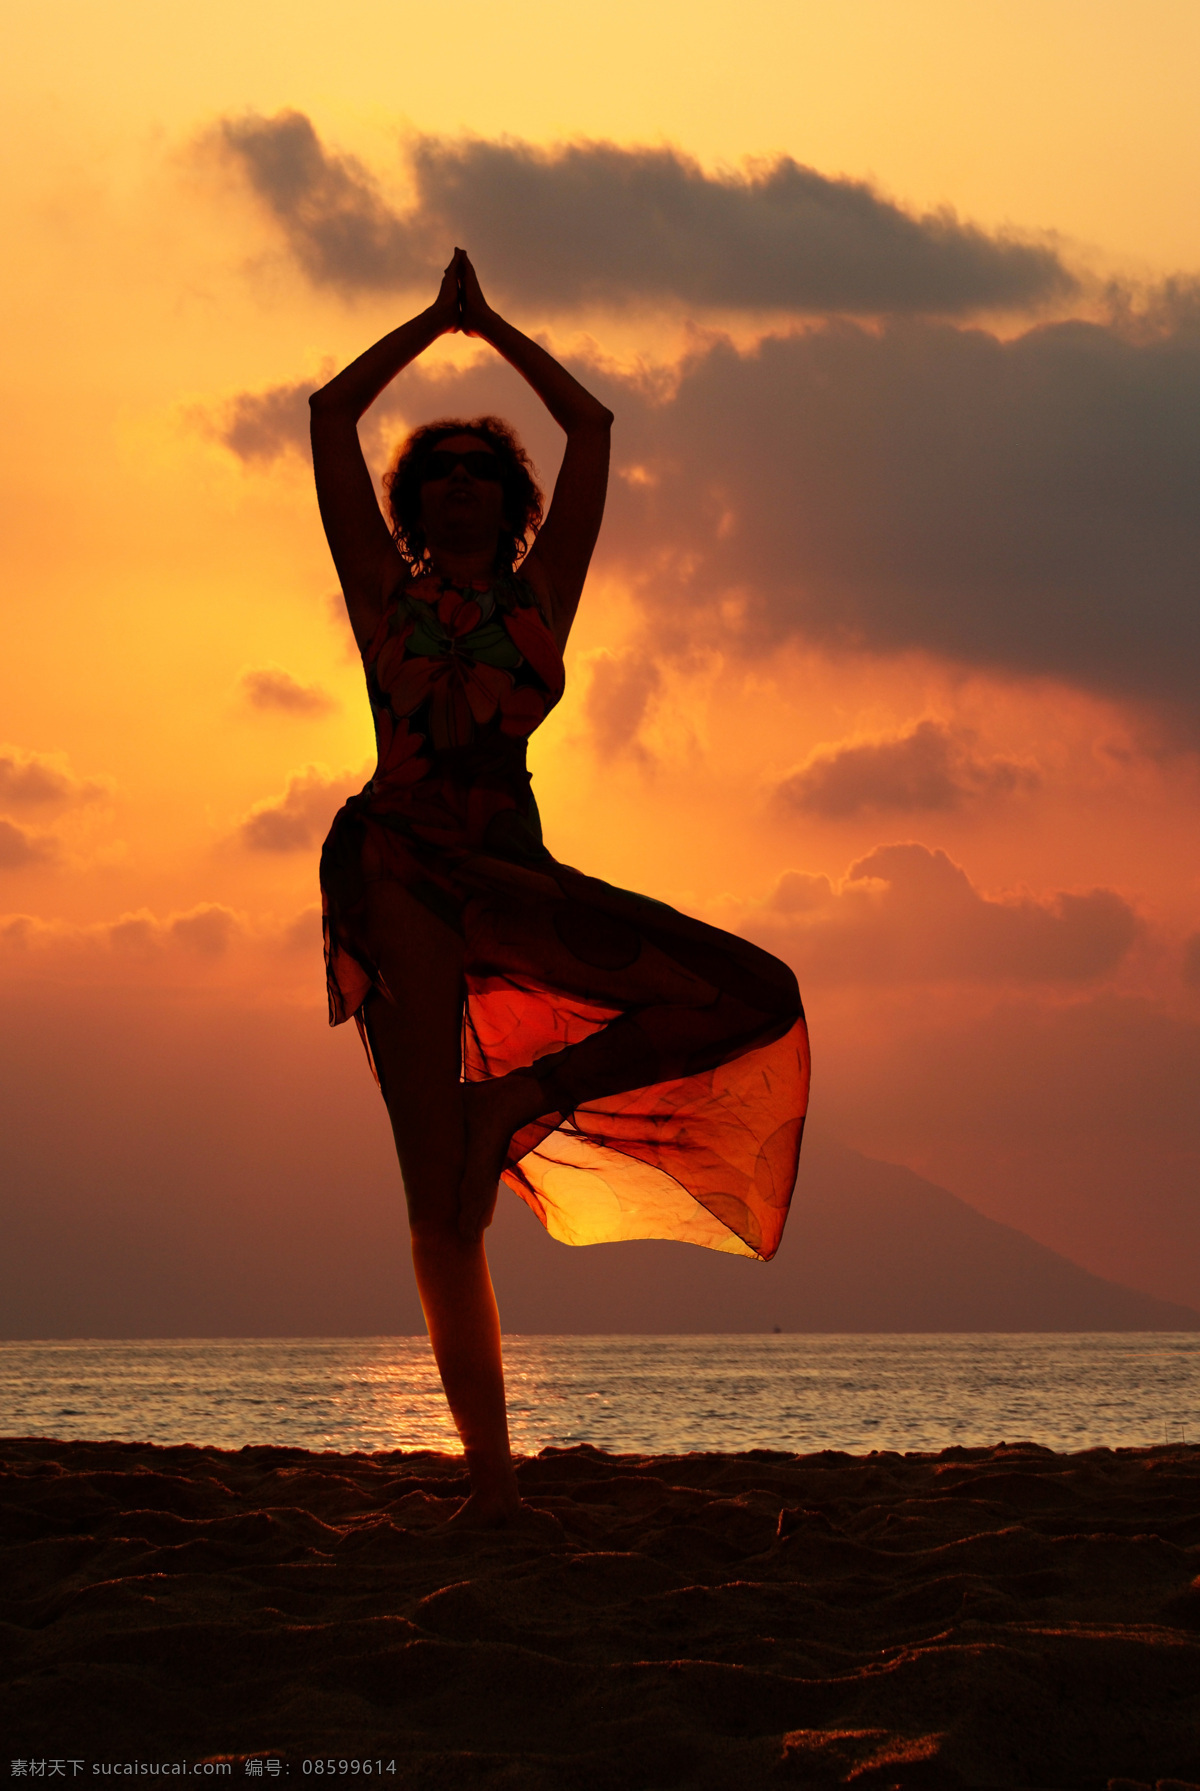 海边 日落 景象 海洋风景 大海 海平面 海面 海水 练瑜珈的人物 单脚站立 练瑜珈的女人 日落风光 美丽风景 海景 海边日落 大海图片 风景图片